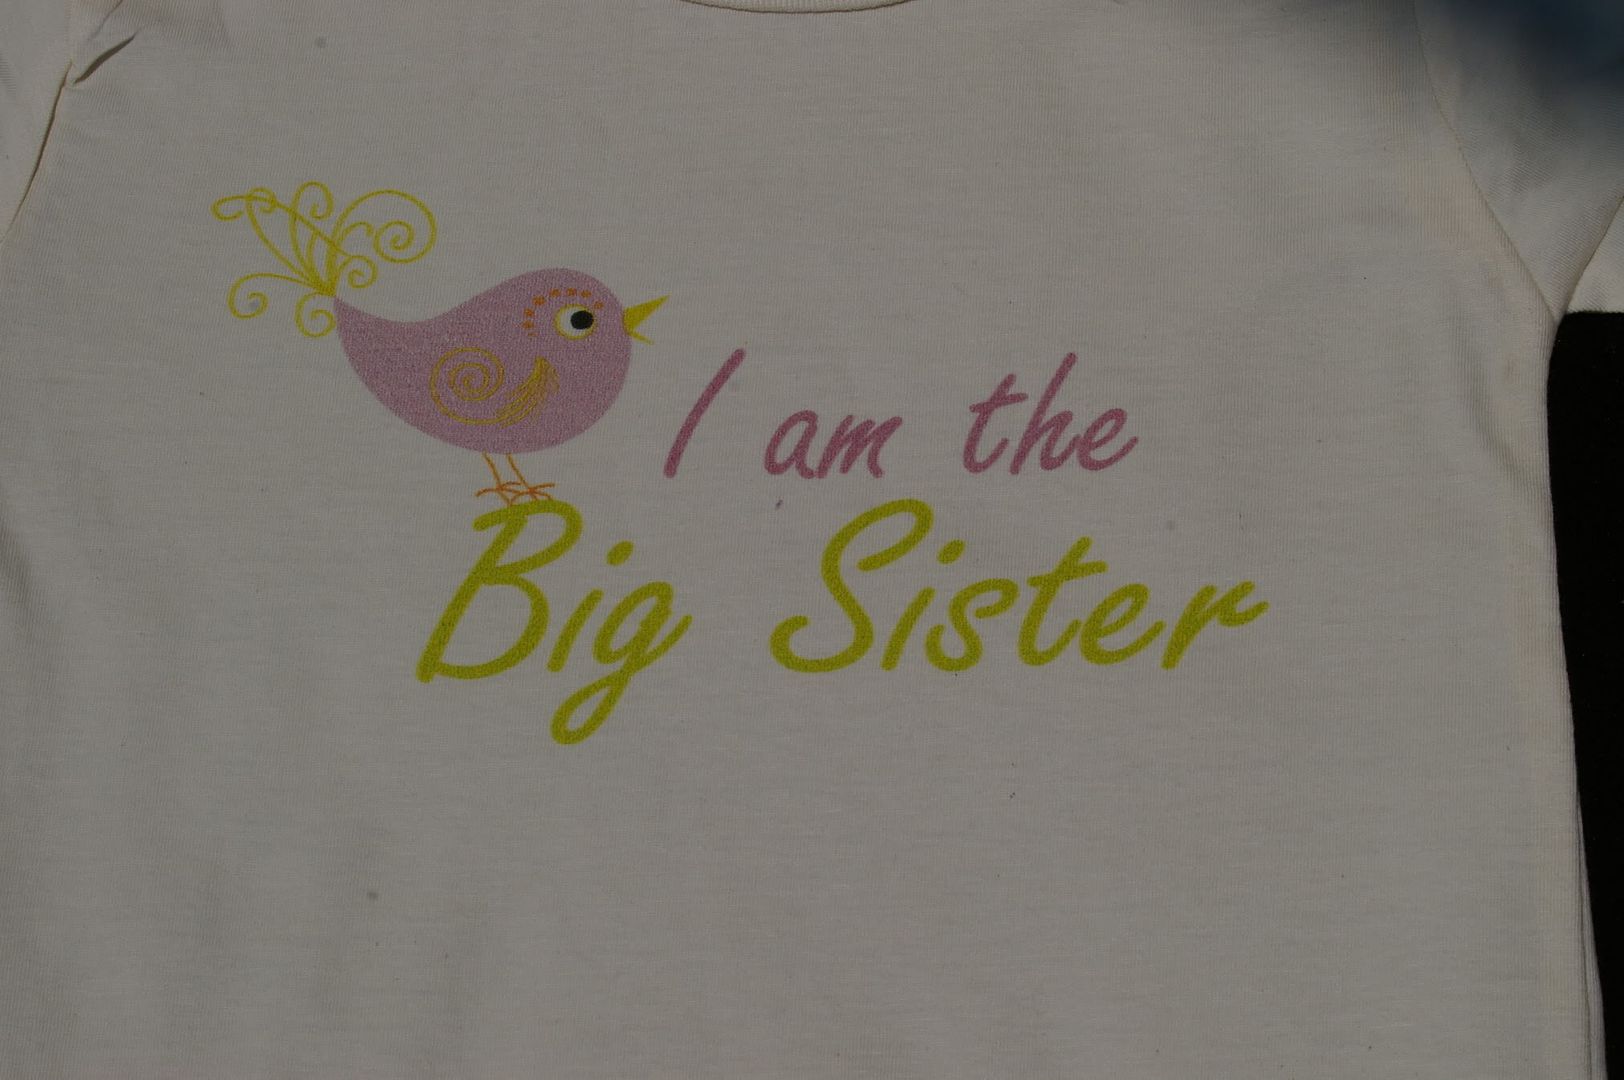 I am a big sister